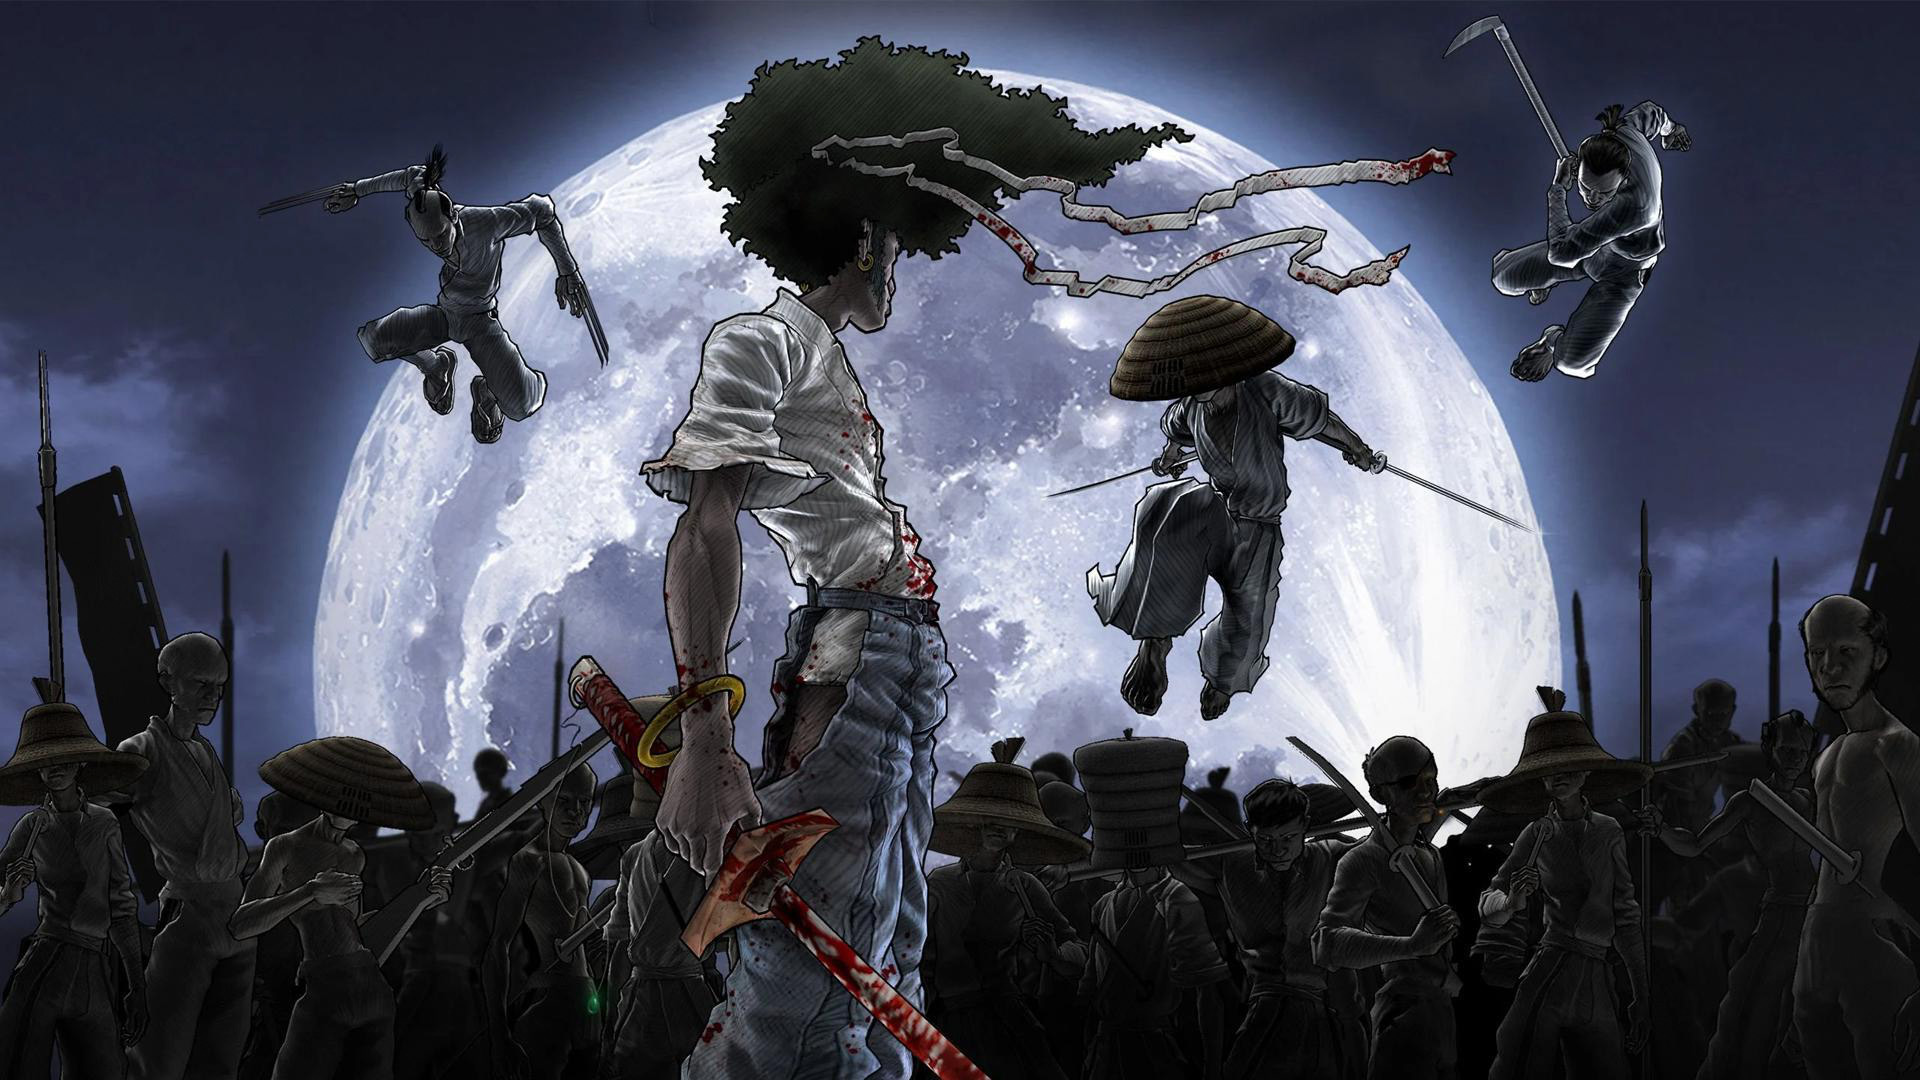 Скриншот из игры Afro Samurai (2009) для PC, PS3 и Xbox 360